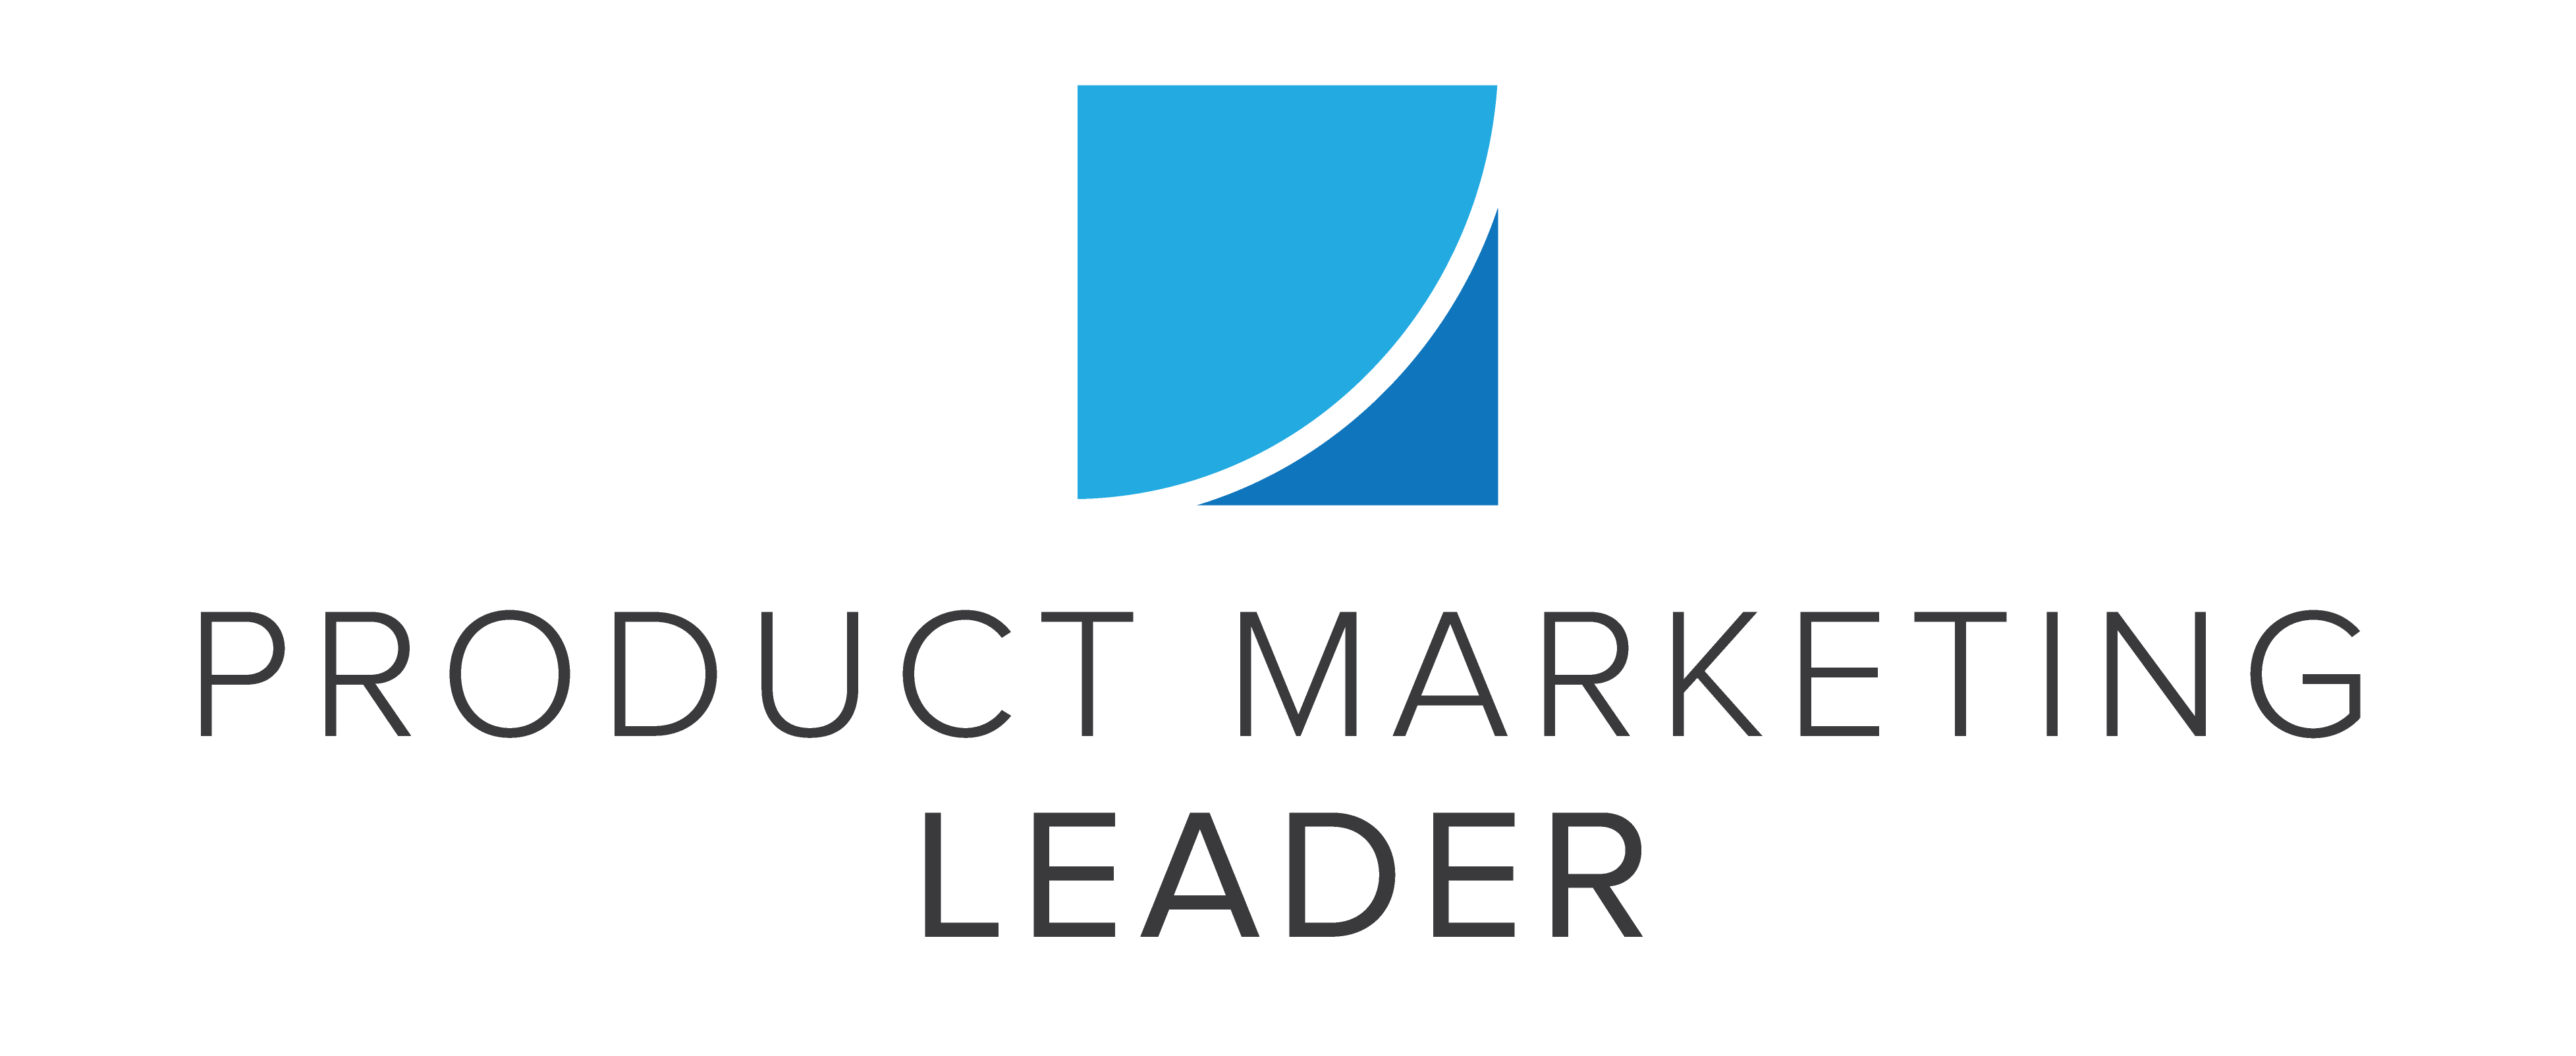 Ir al mercado como servicio - Presales Leader LLC